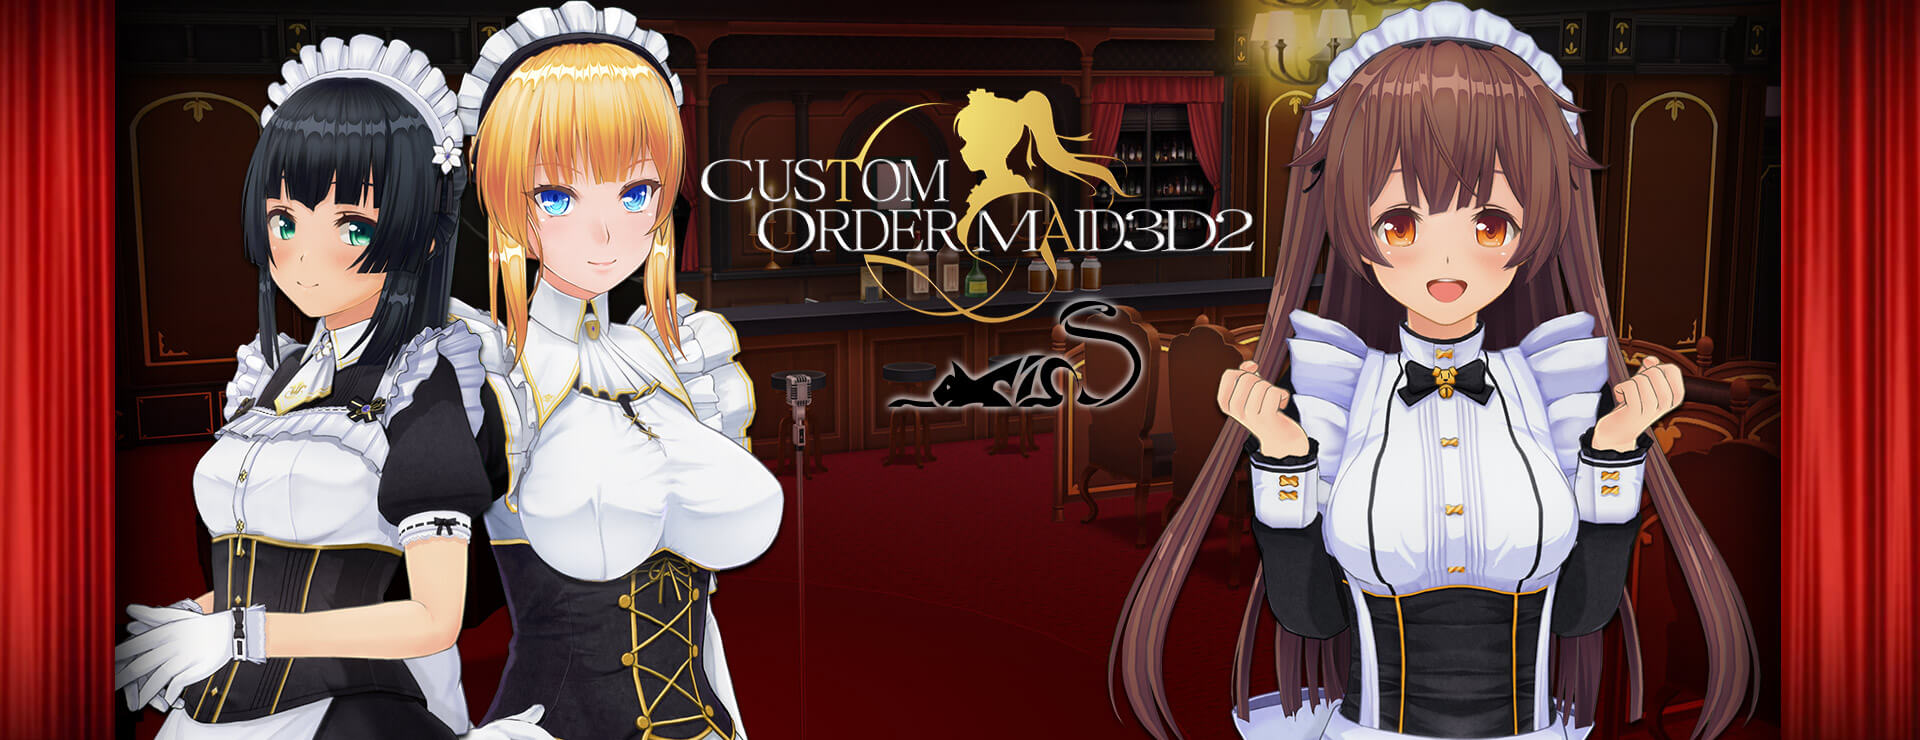 Custom Order Maid 3D2 - It's a Night Magic Premium Empire Bundle - Simulation Game